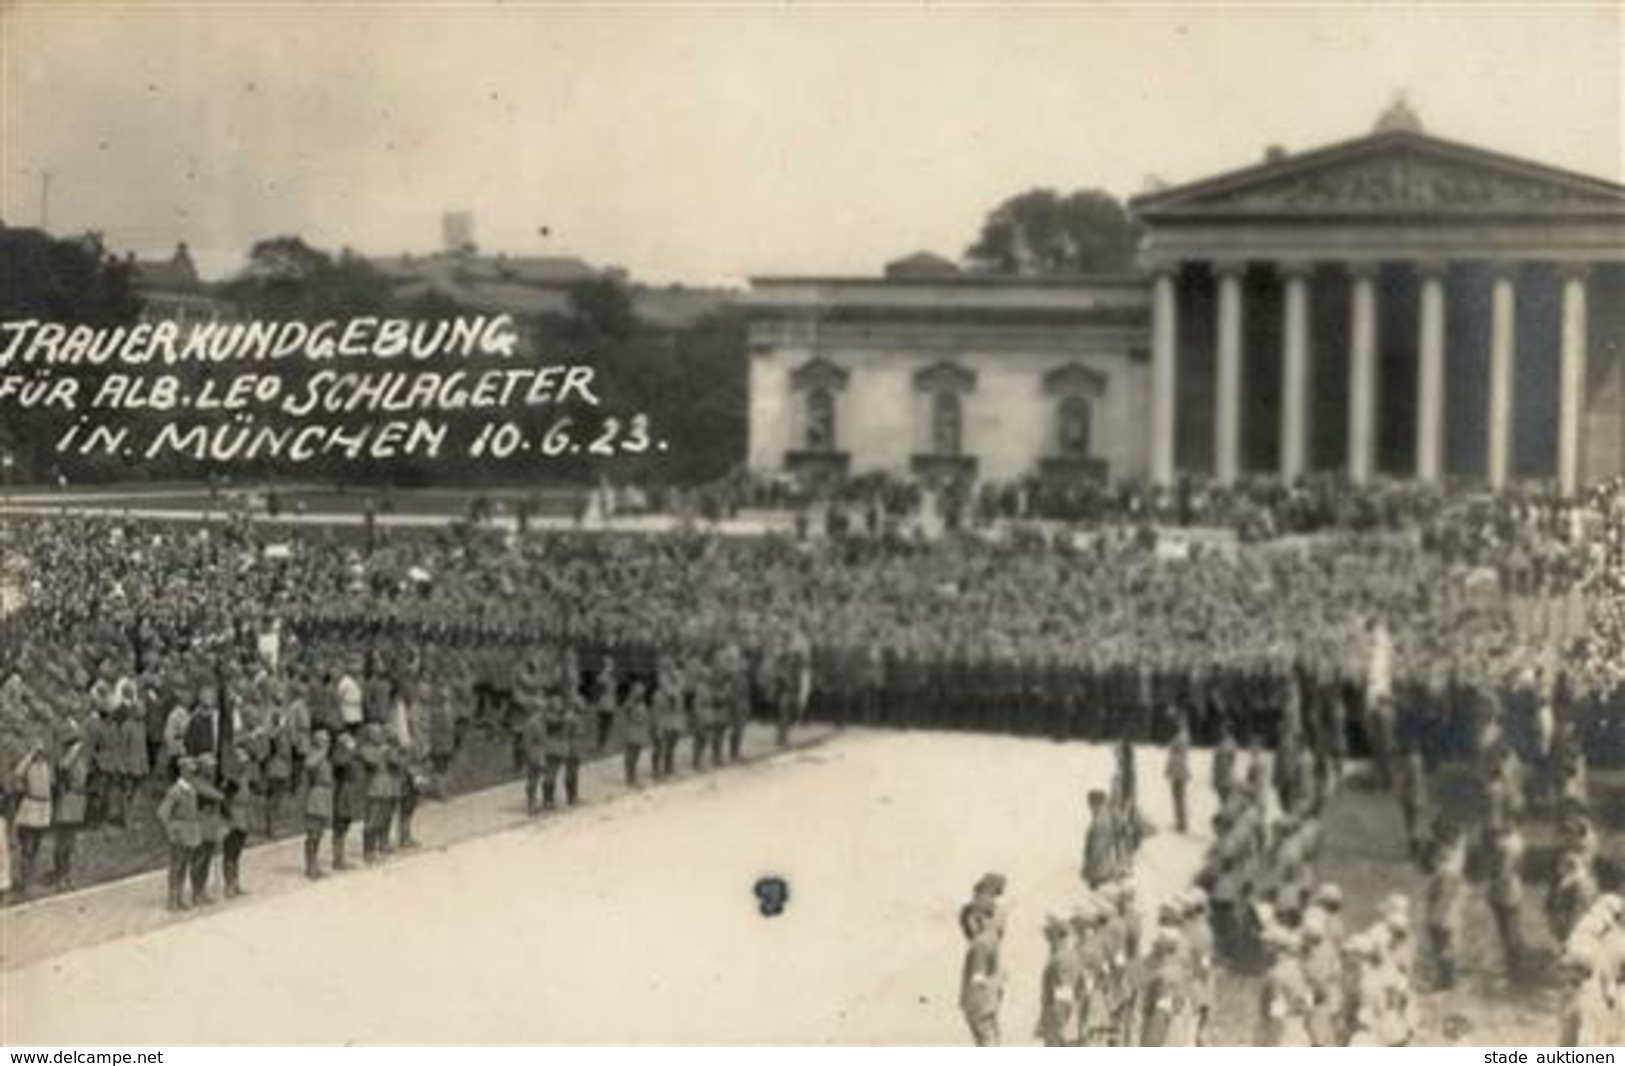 Weimarer Republik München (8000) Trauerkundgebung Alb. Leo Schlageter Foto AK I-II - Histoire